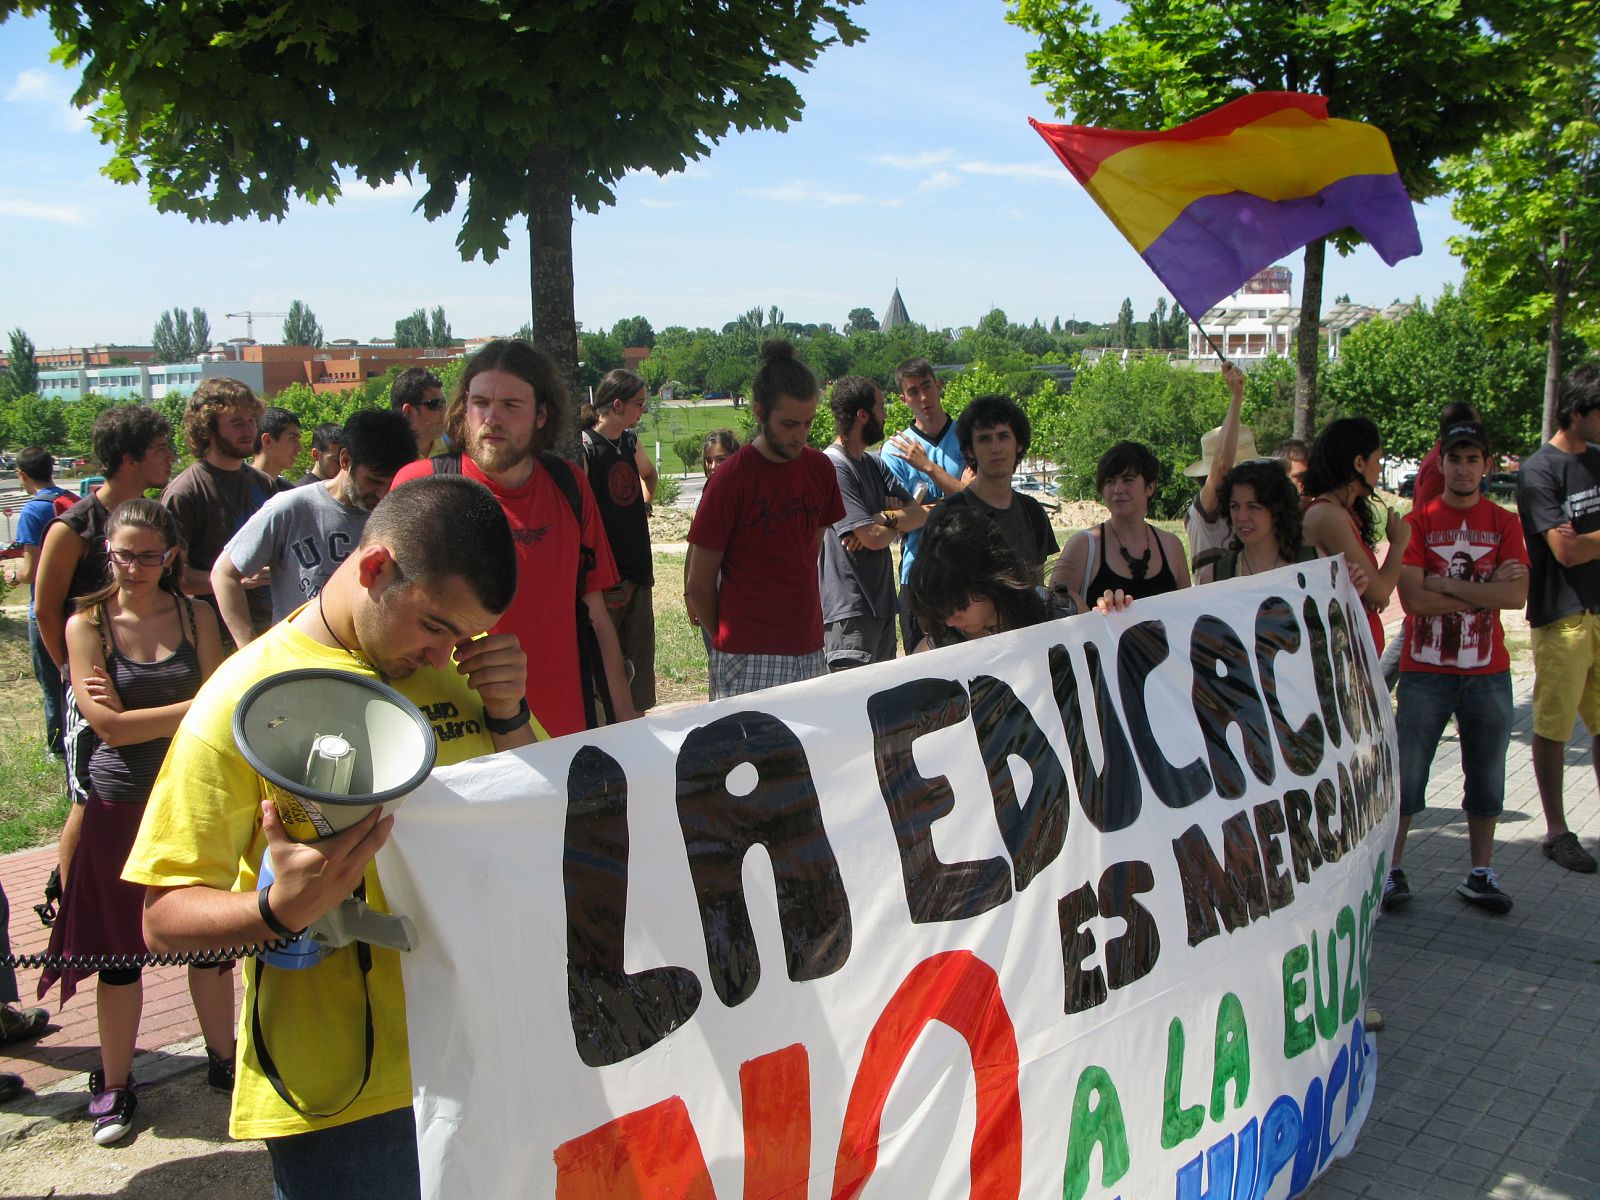 Un grupo de jóvenes protestan ante la llegada del príncipe a la autónoma